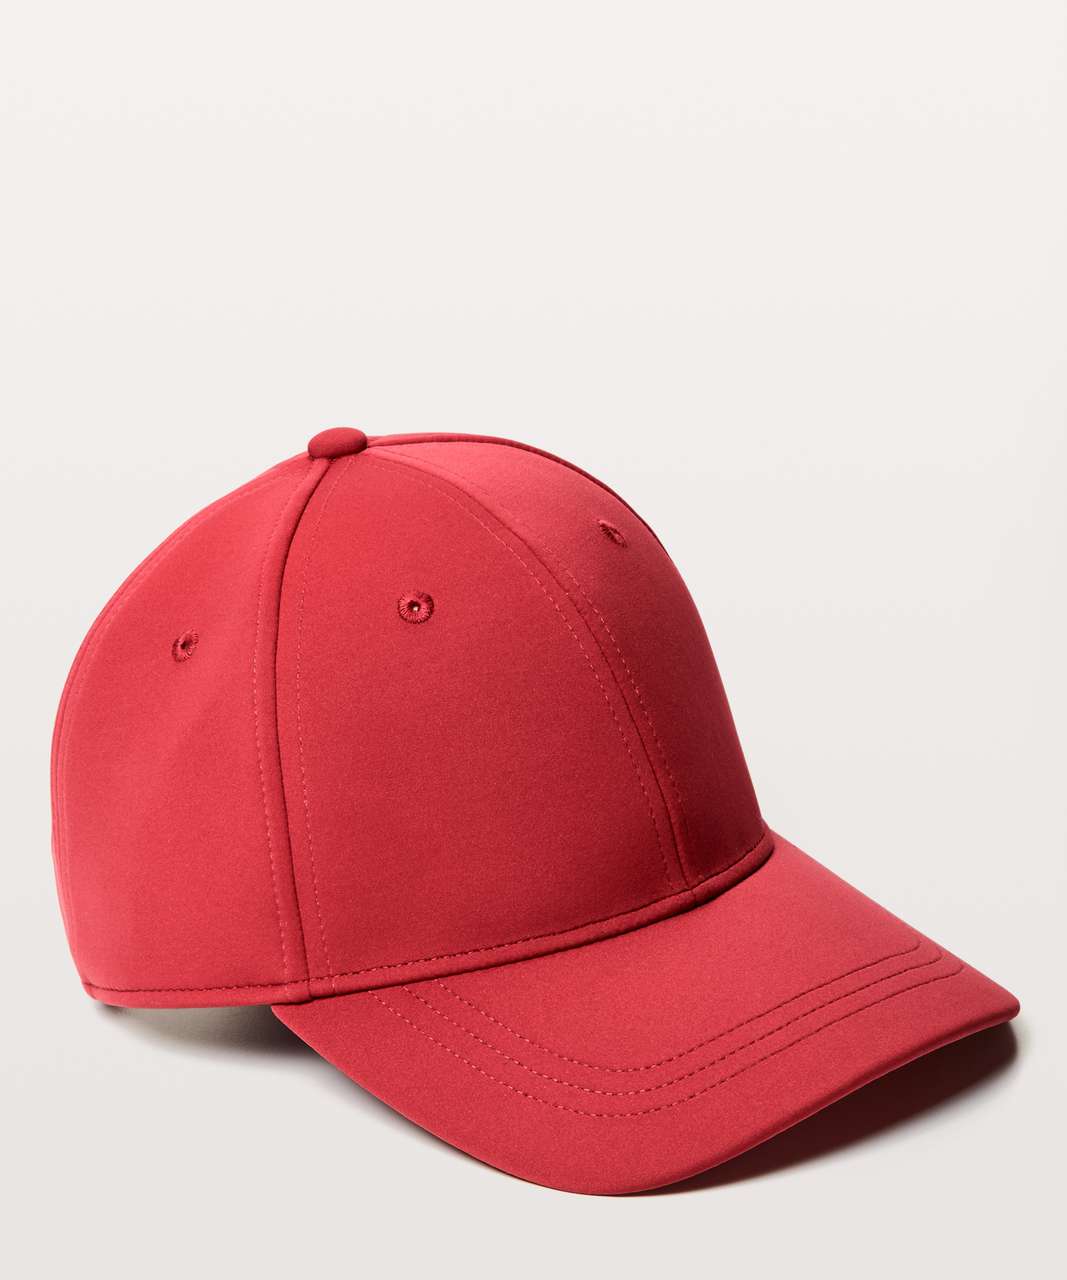 Lululemon Baller Hat - Persian Red